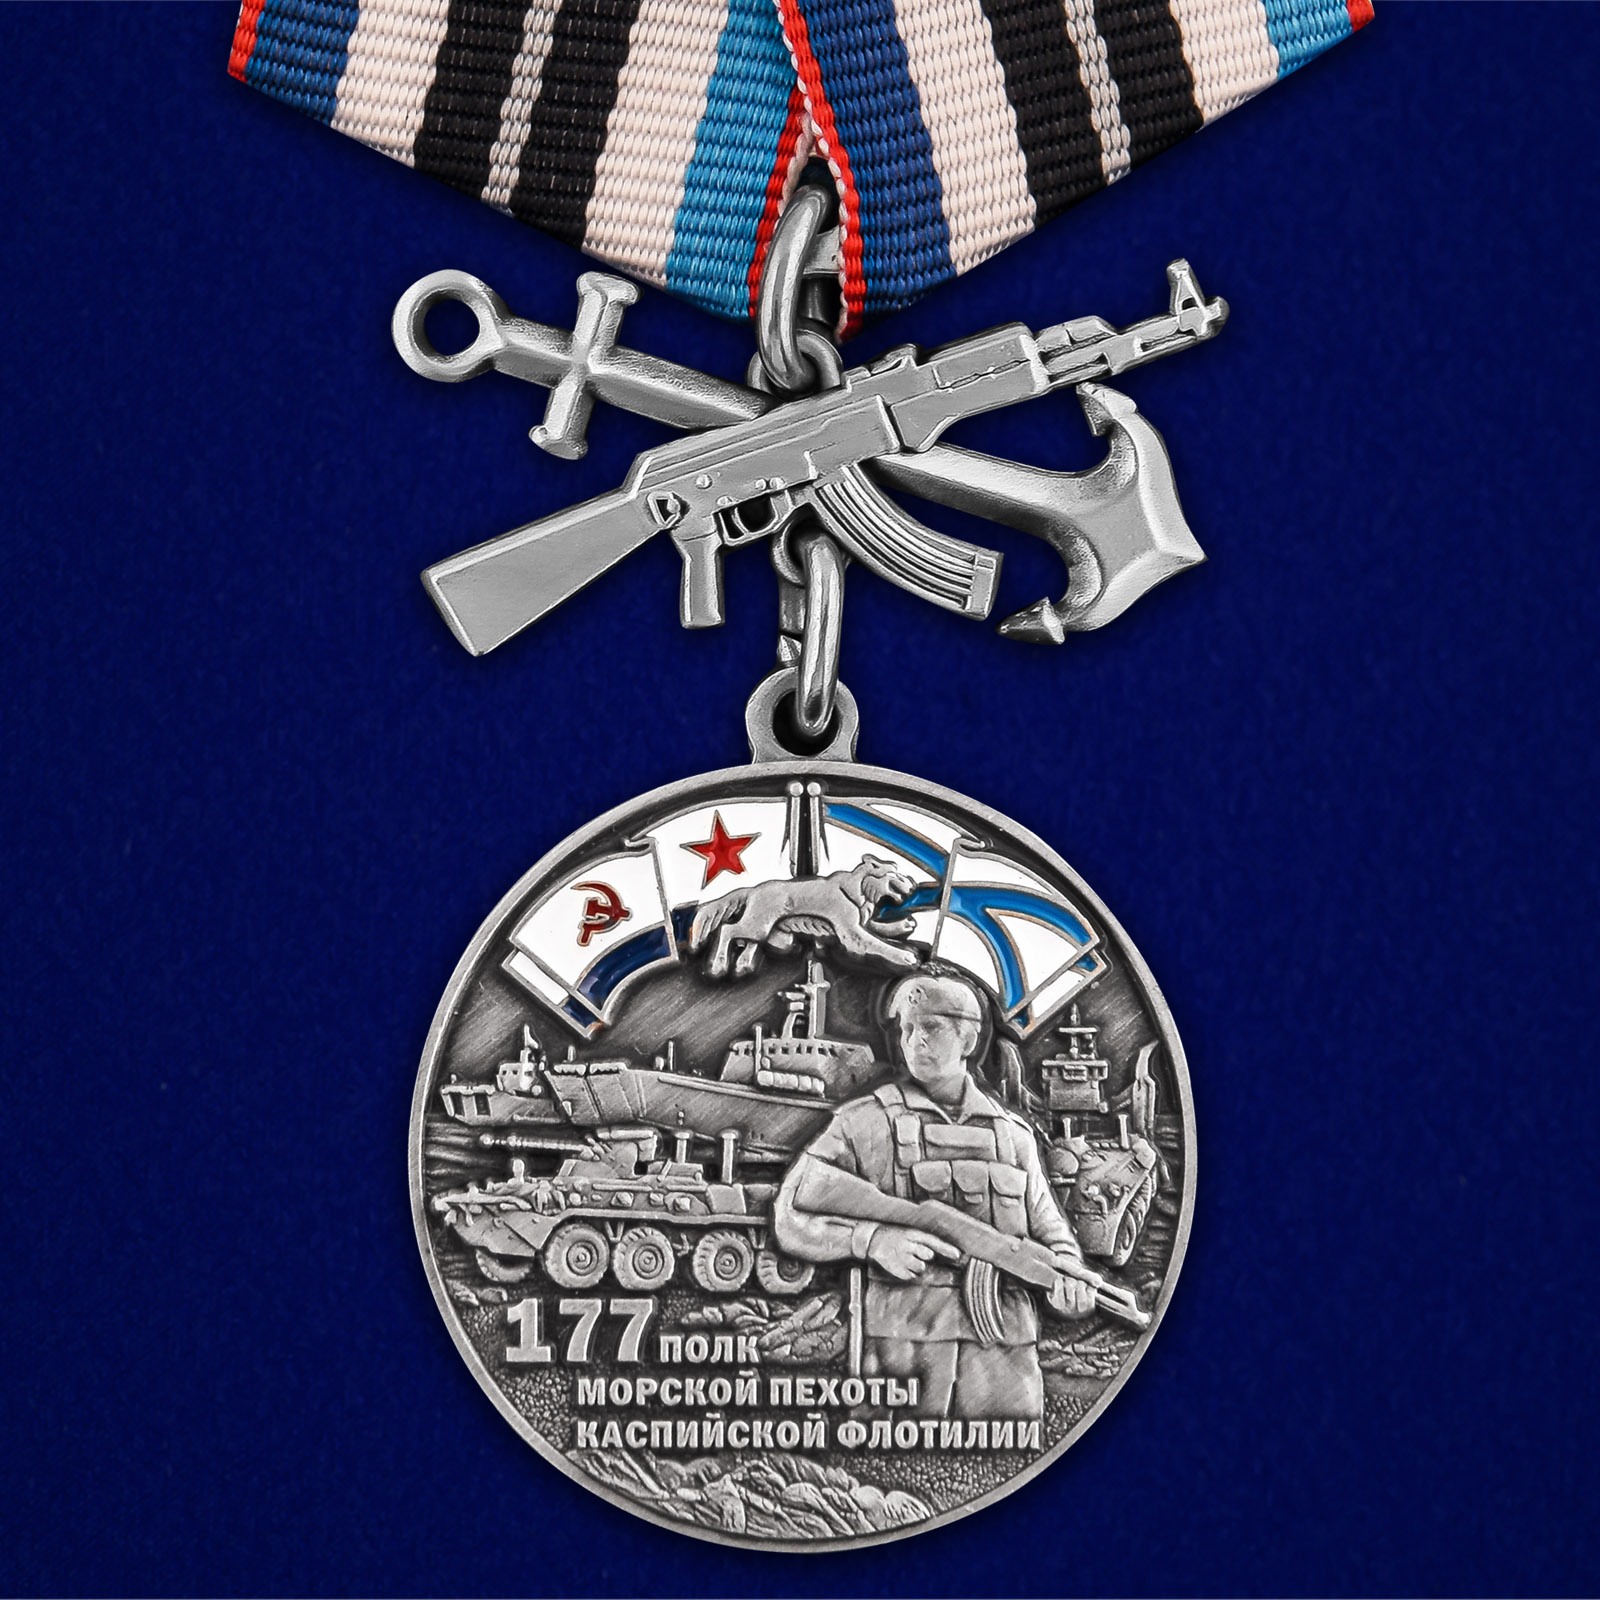 Купить медаль 177-й полк морской пехоты на подставке выгодно